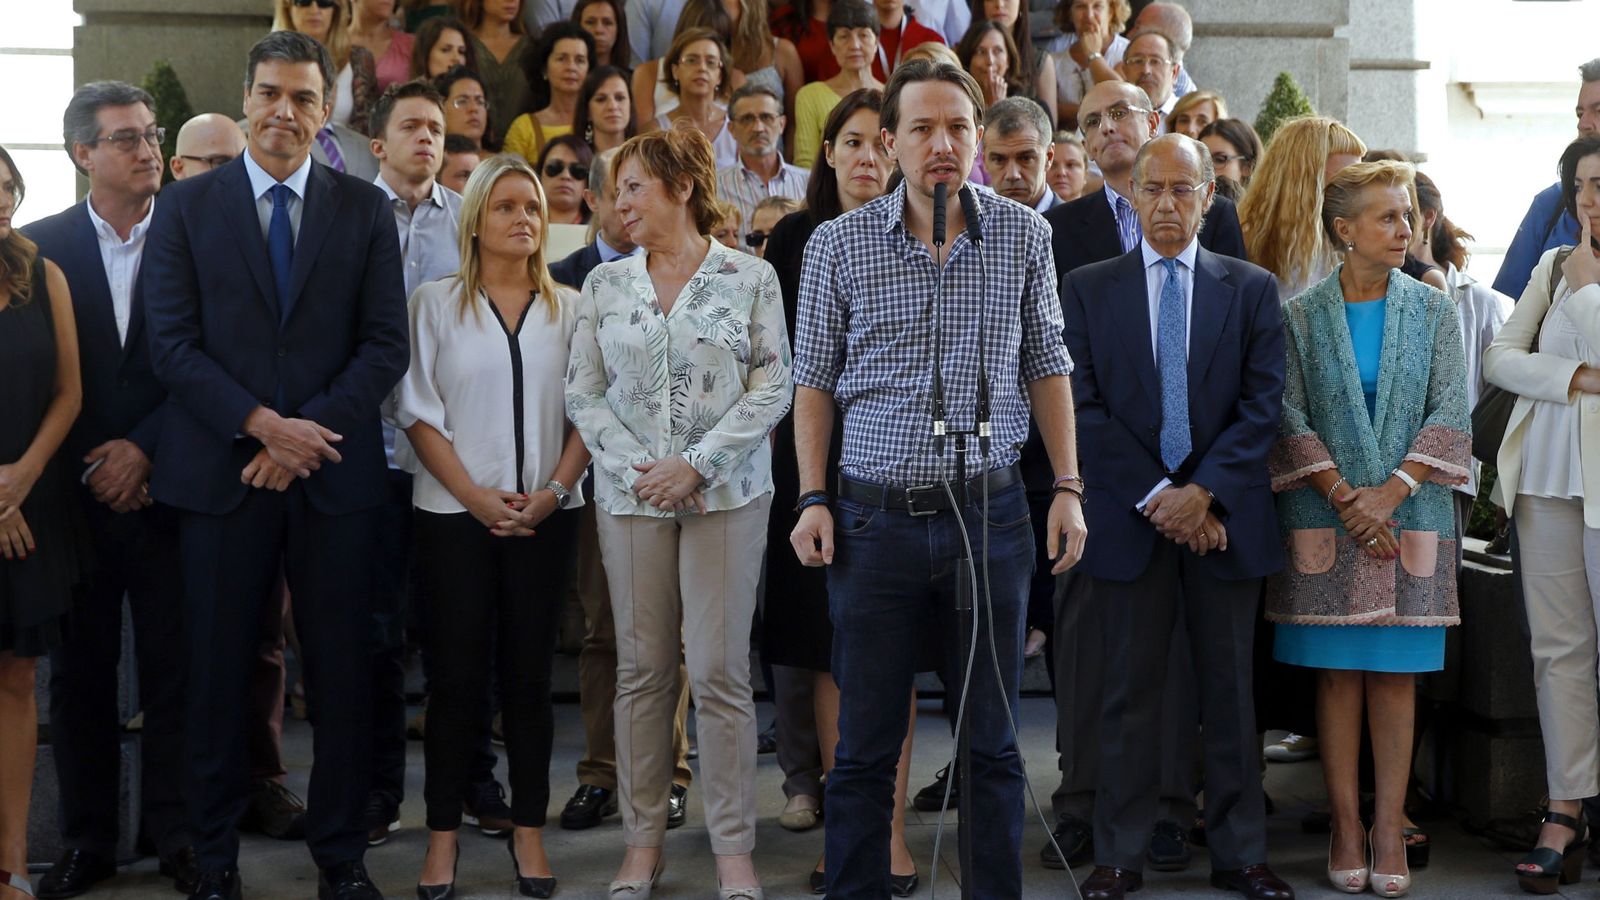 Foto: El líder de Podemos, Pablo Iglesias, pronunica unas palabras tras guardar hoy un minuto de silencio en memoria de las víctimas del atentado perpetrado anoche Niza. (EFE)